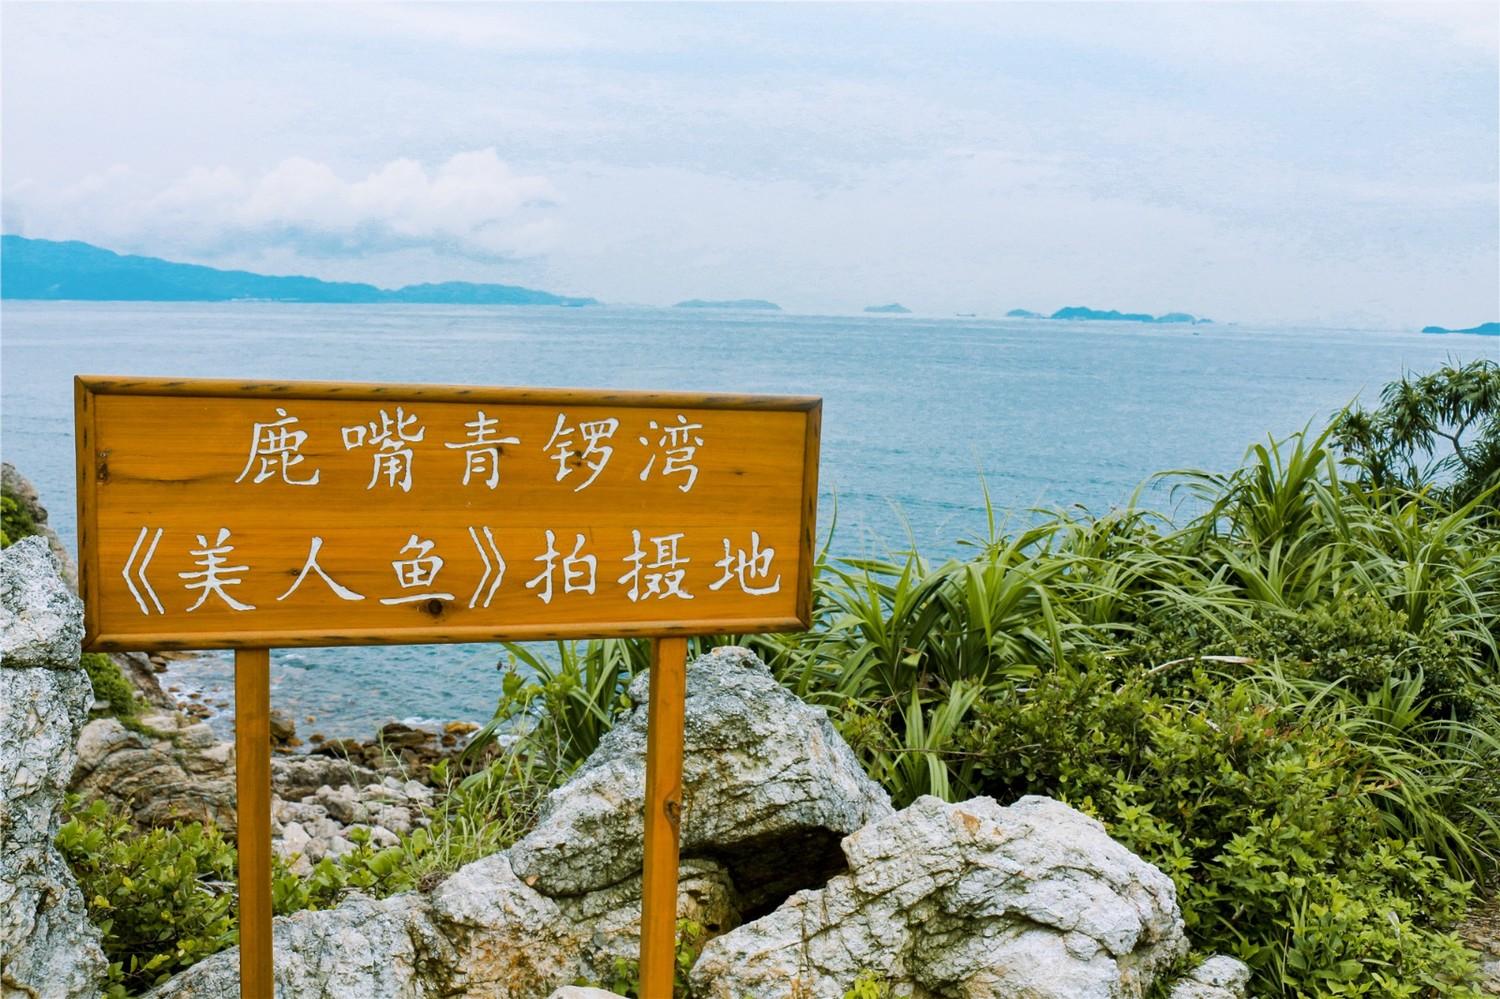 美人鱼深圳的取景地点图片